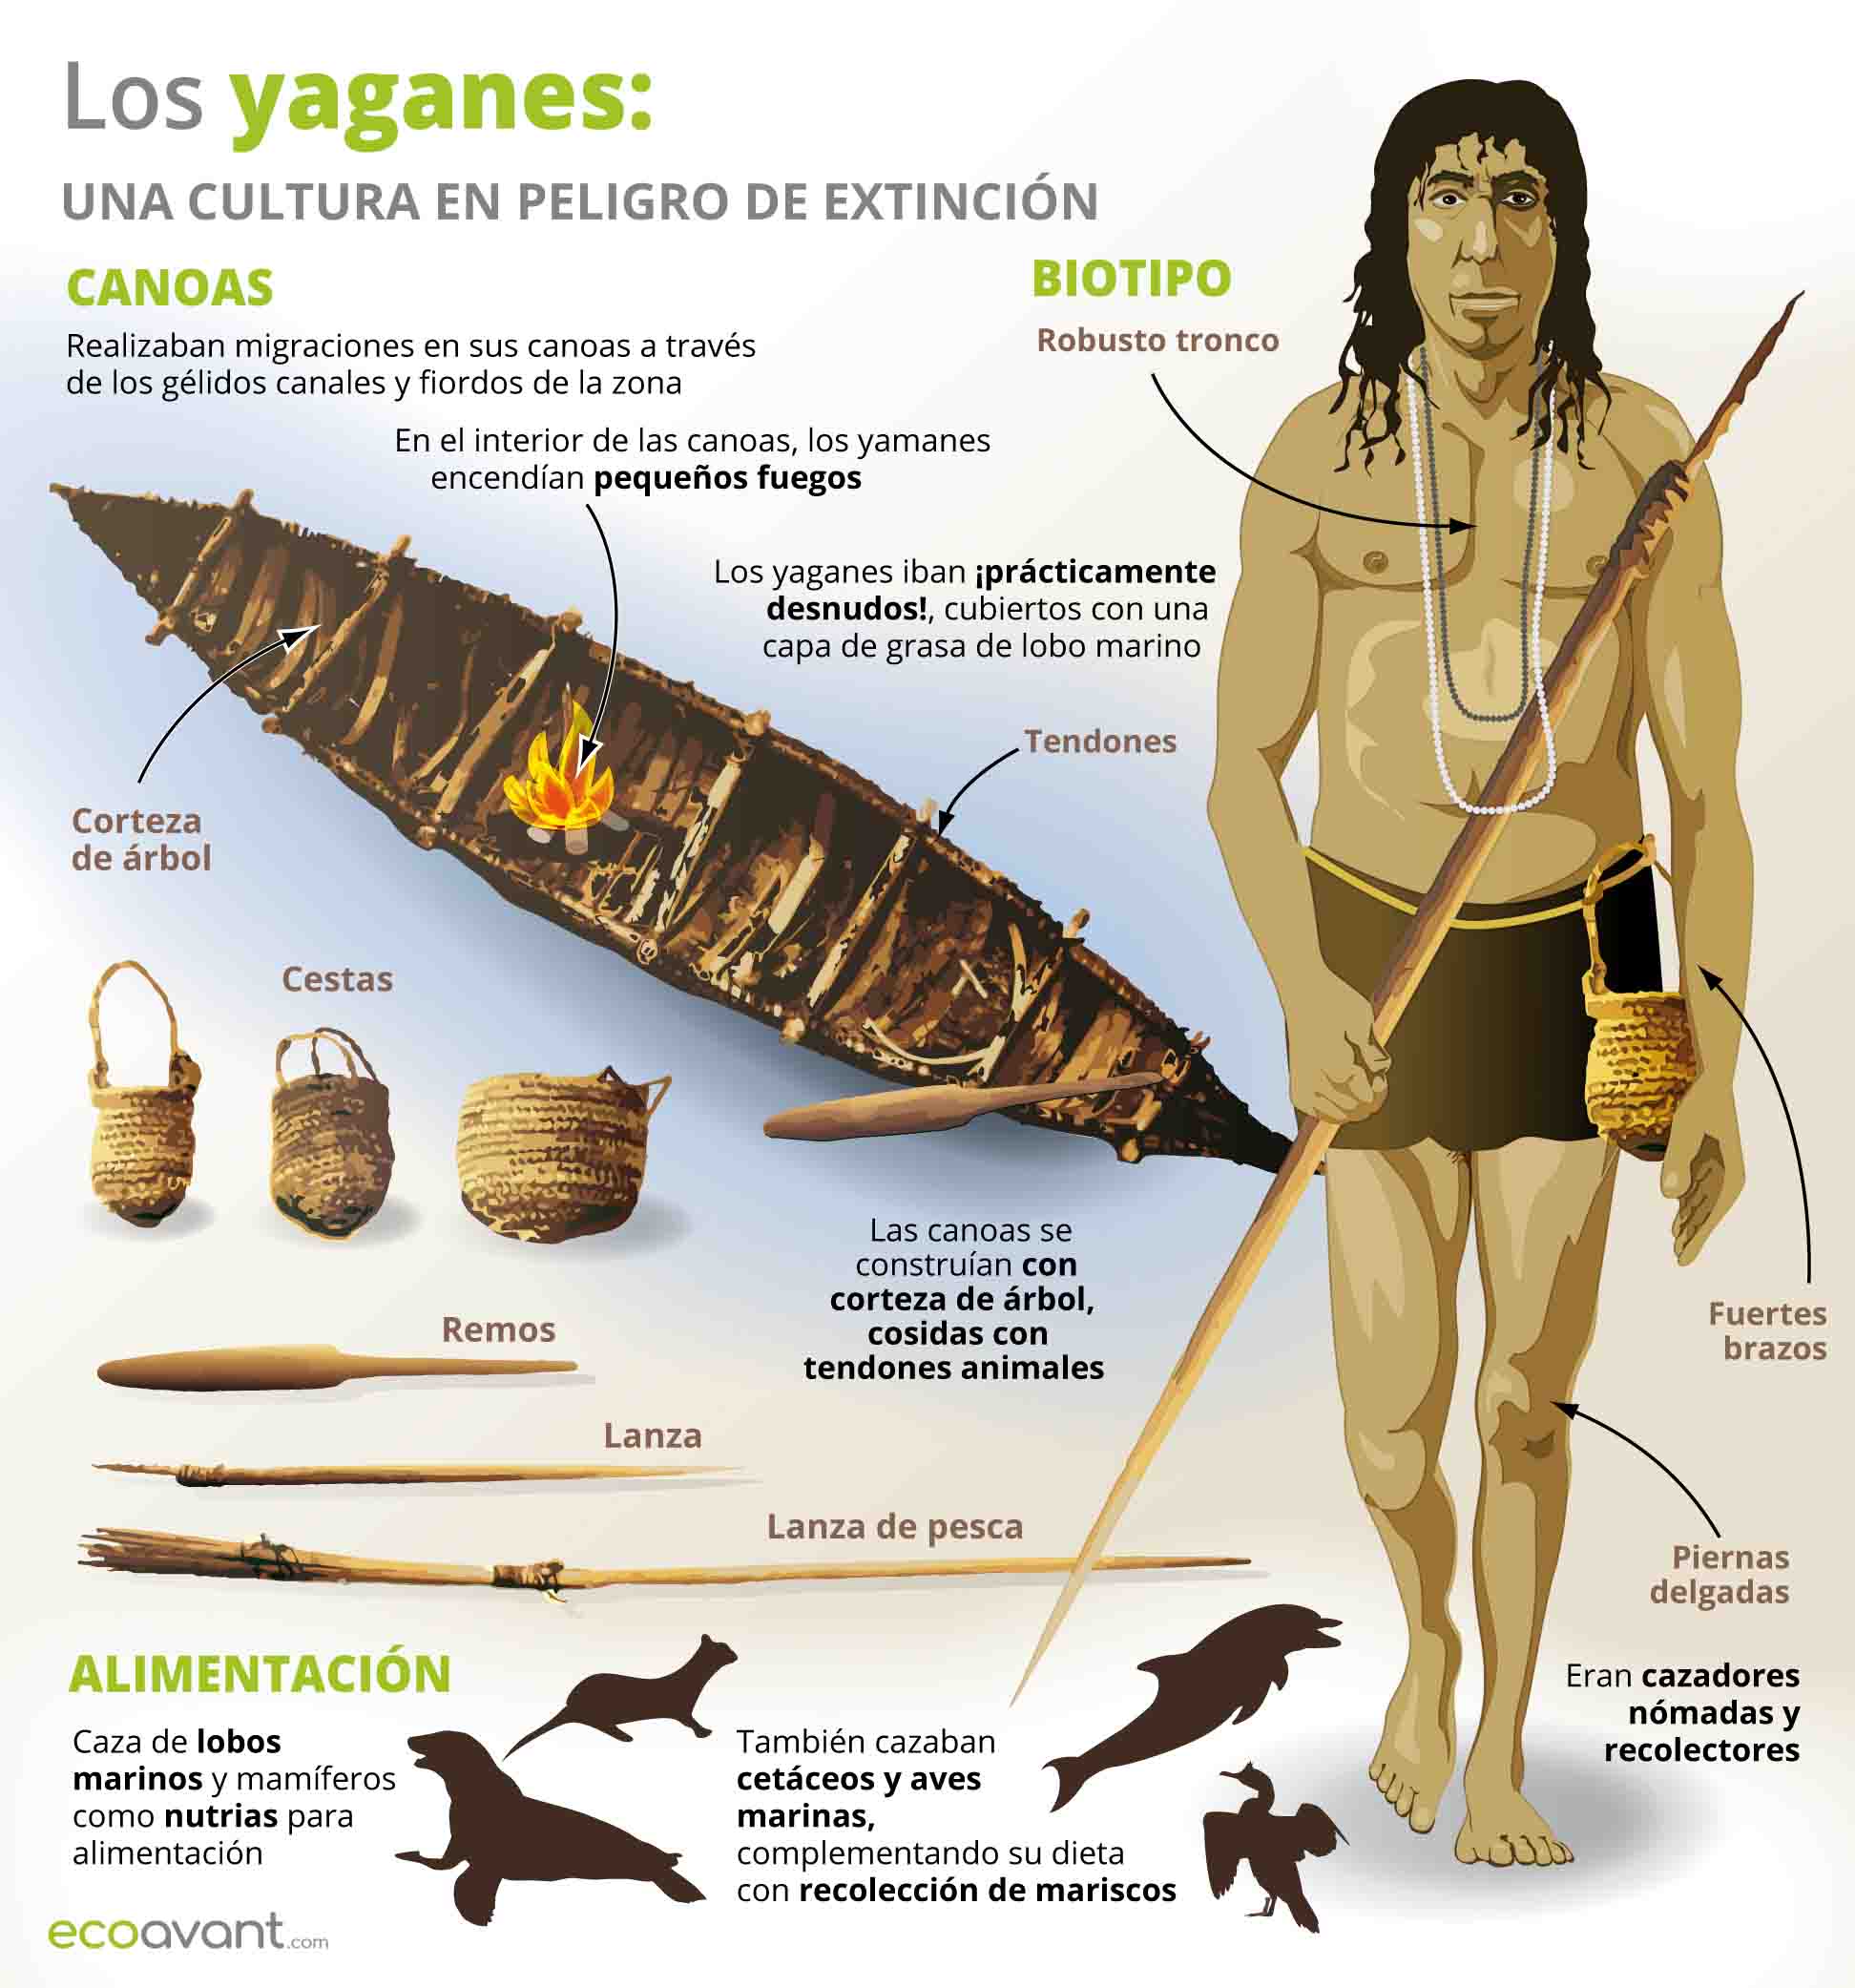 Infografía descriptiva de la cultura de los yaganes / Imagen: EA